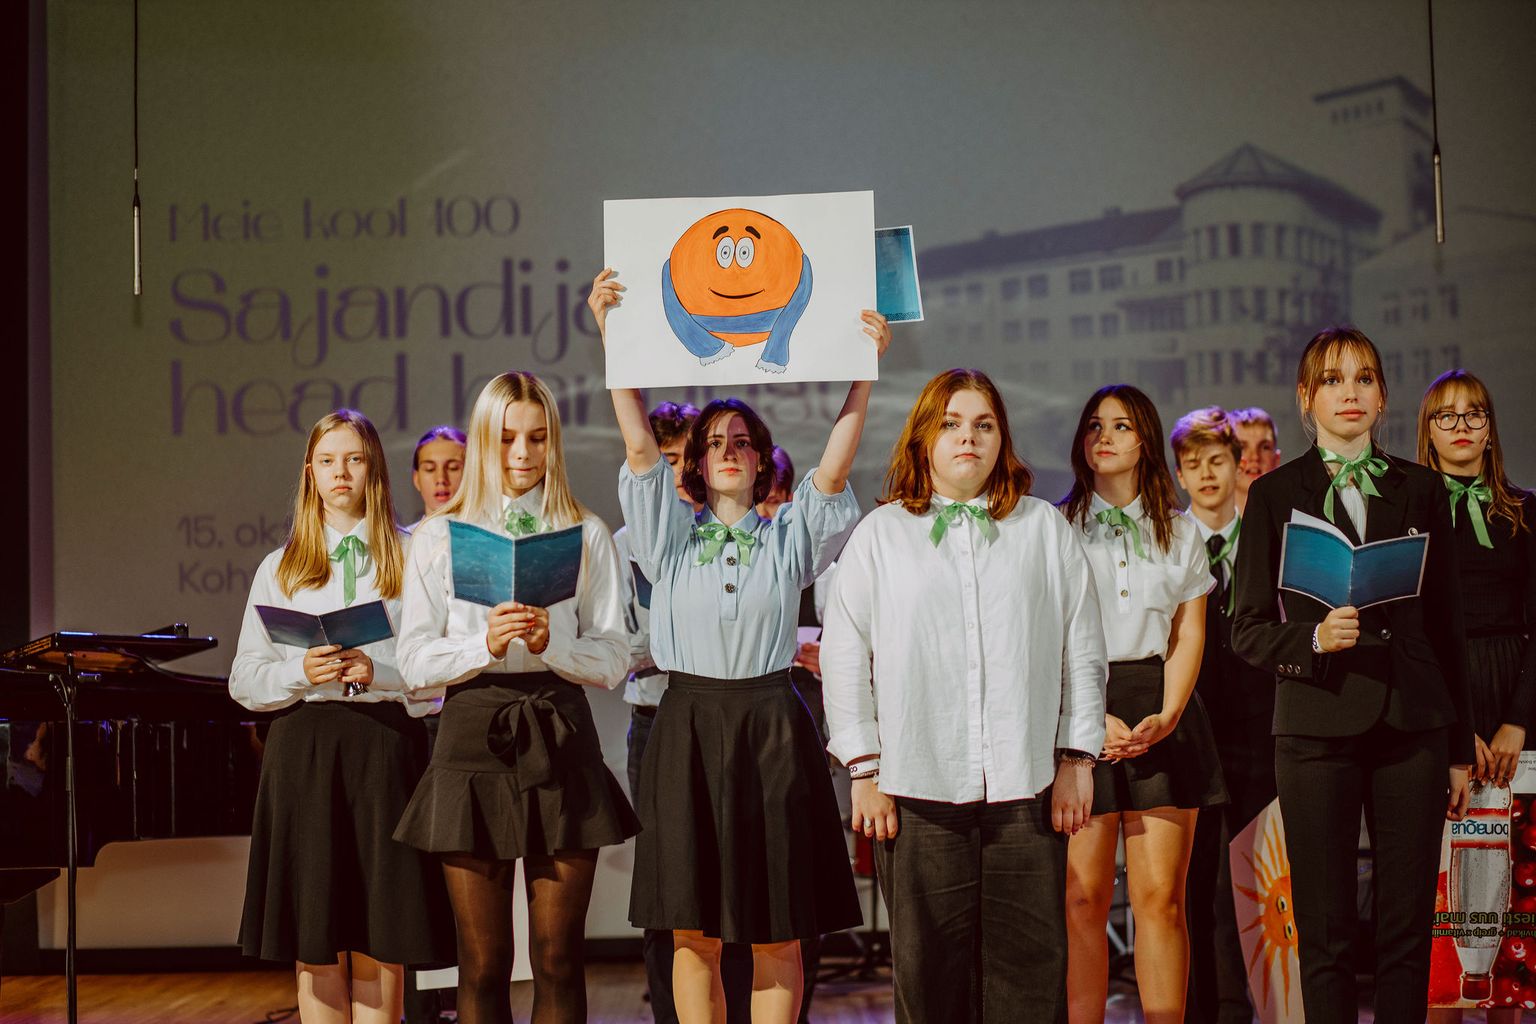 Программа учеников Ярвеской основной школы, выступивших на концерте, посвященном столетию эстонской школы Кохтла-Ярве, осветила самые знаменательные поворотные моменты в истории школы.